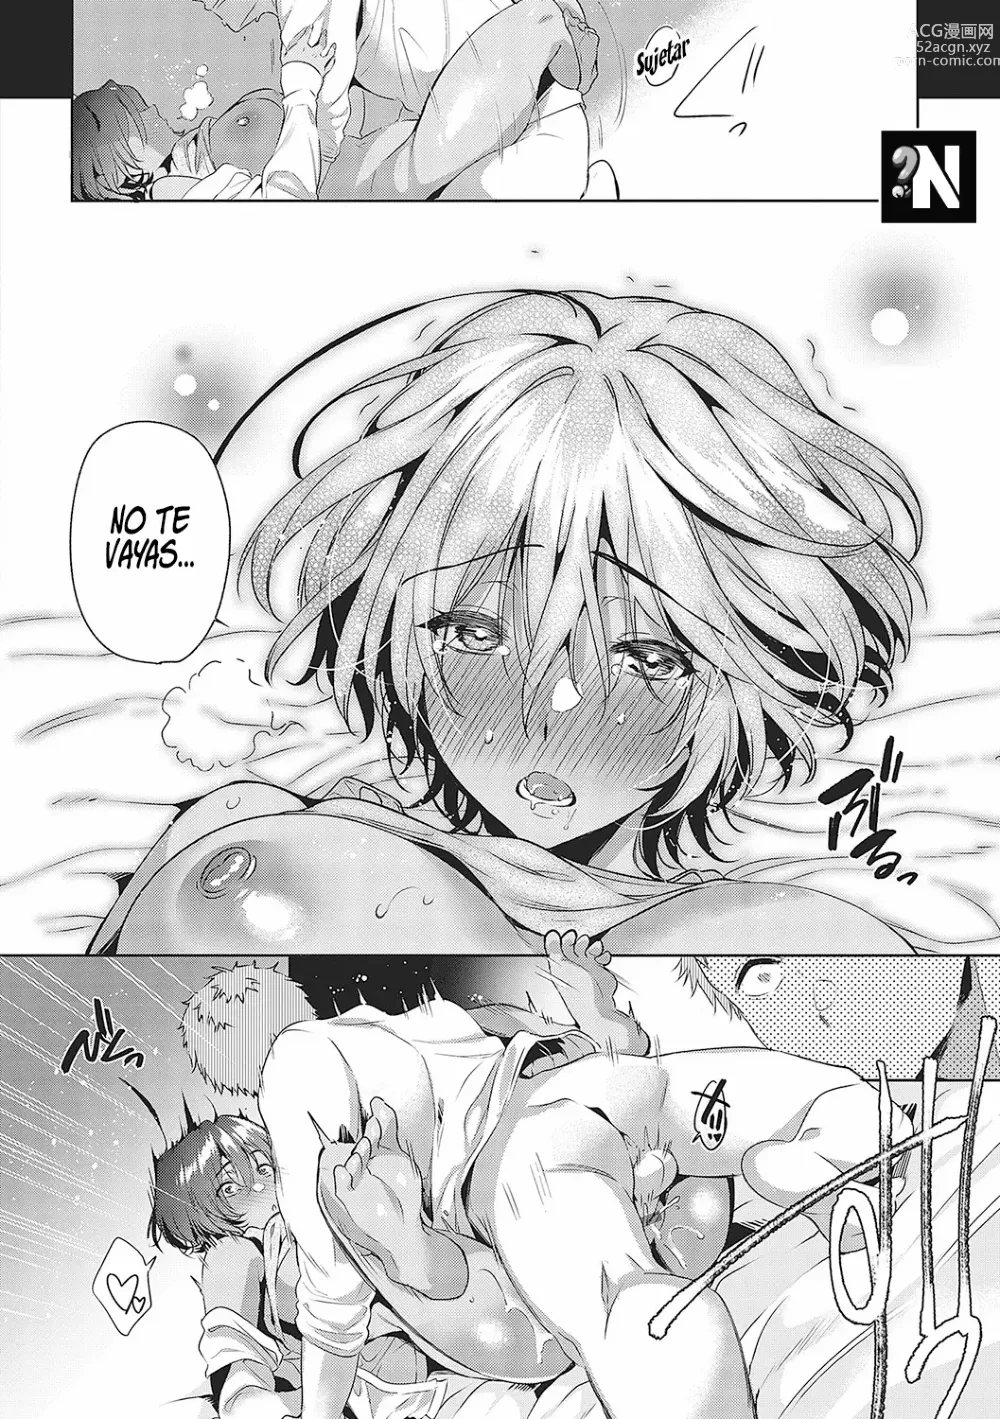 Page 21 of manga La Chica Despistada Quiere Asegurarse